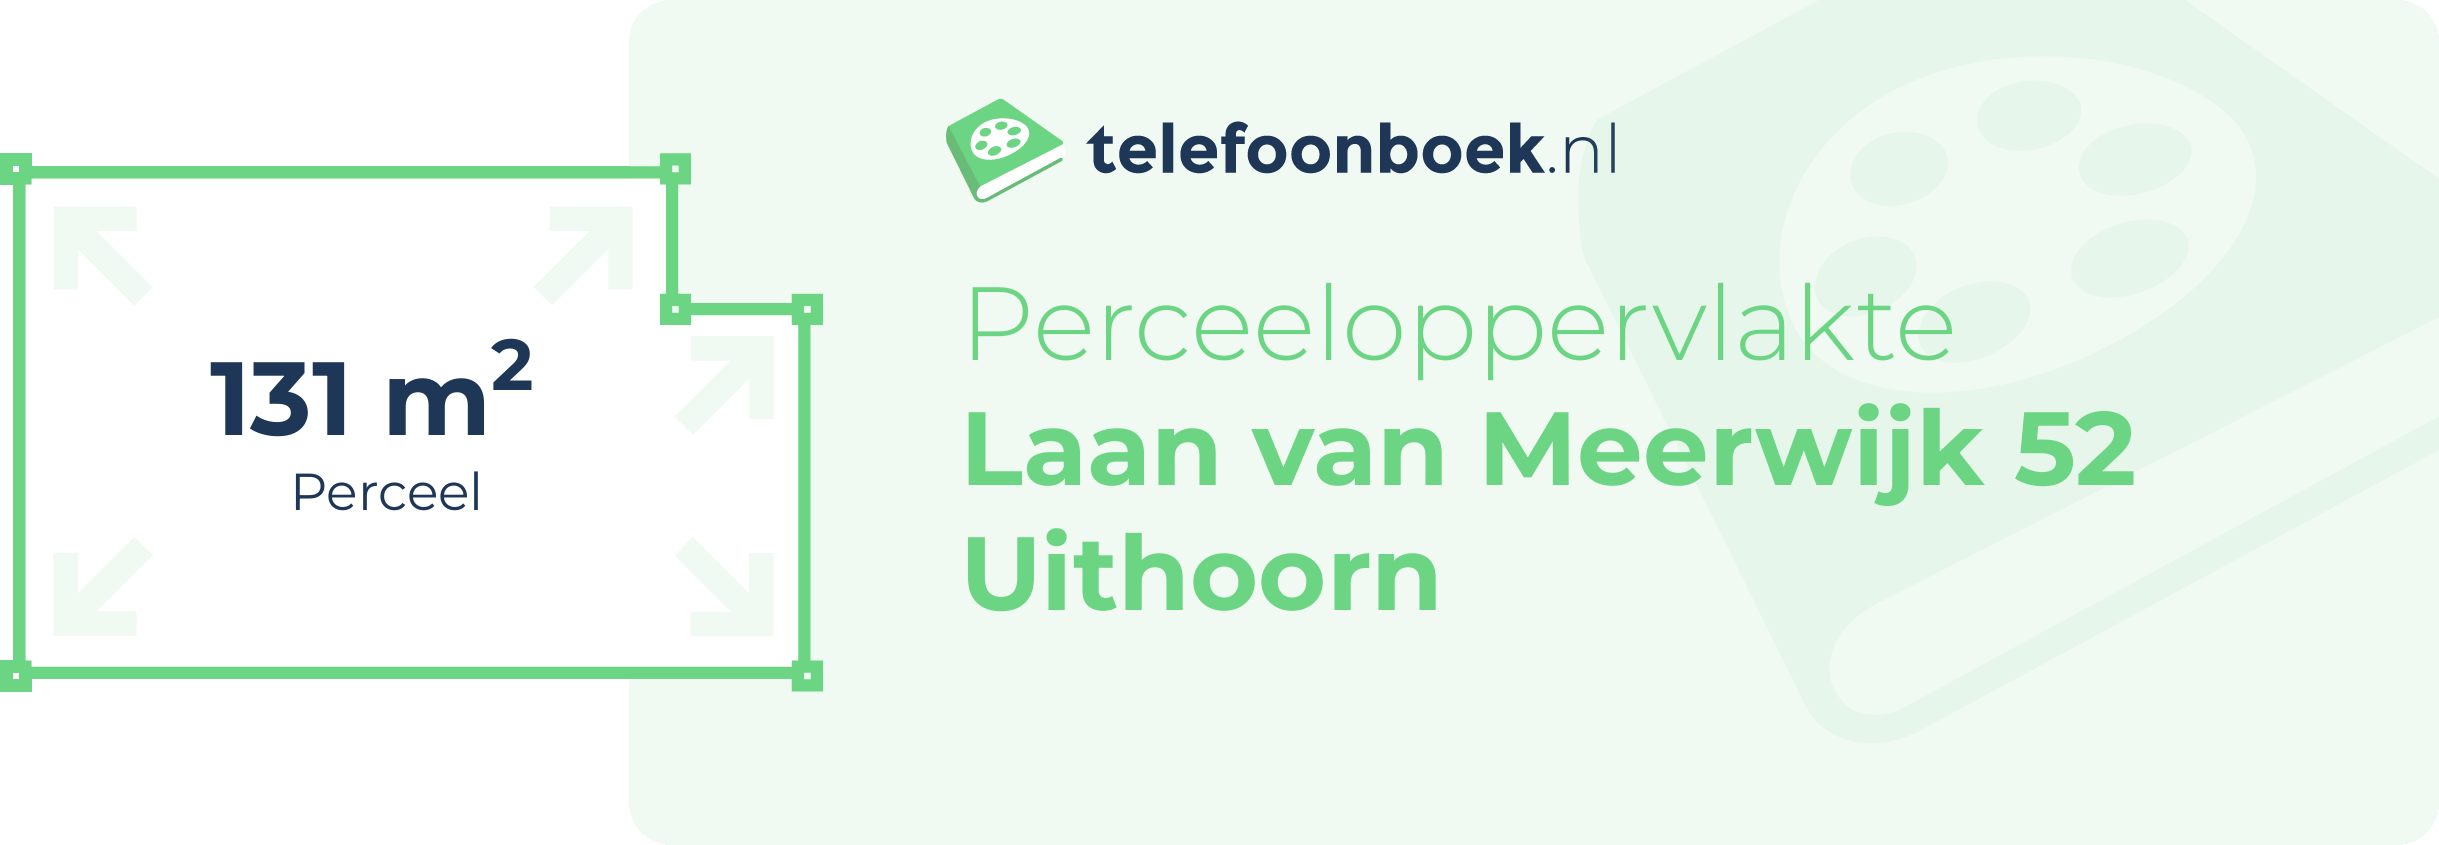 Perceeloppervlakte Laan Van Meerwijk 52 Uithoorn